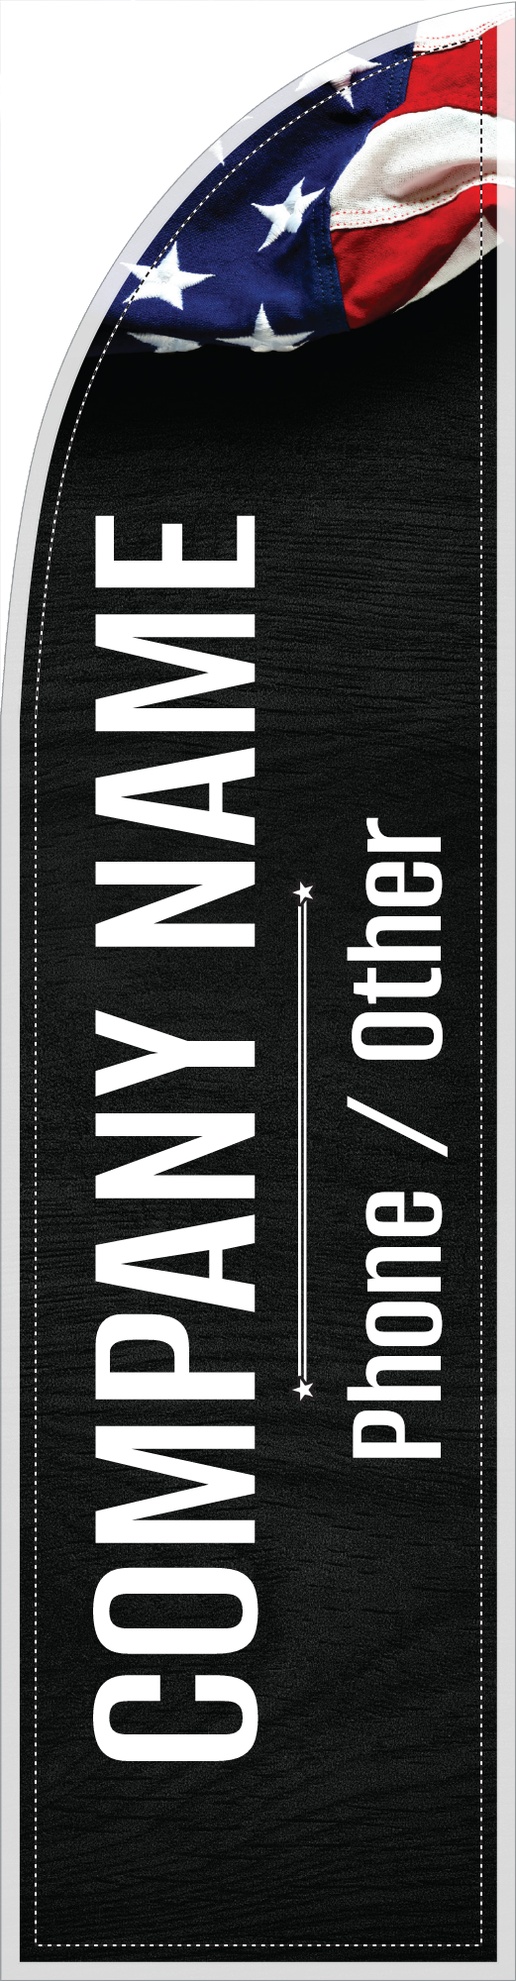 A vertical campaign black white design